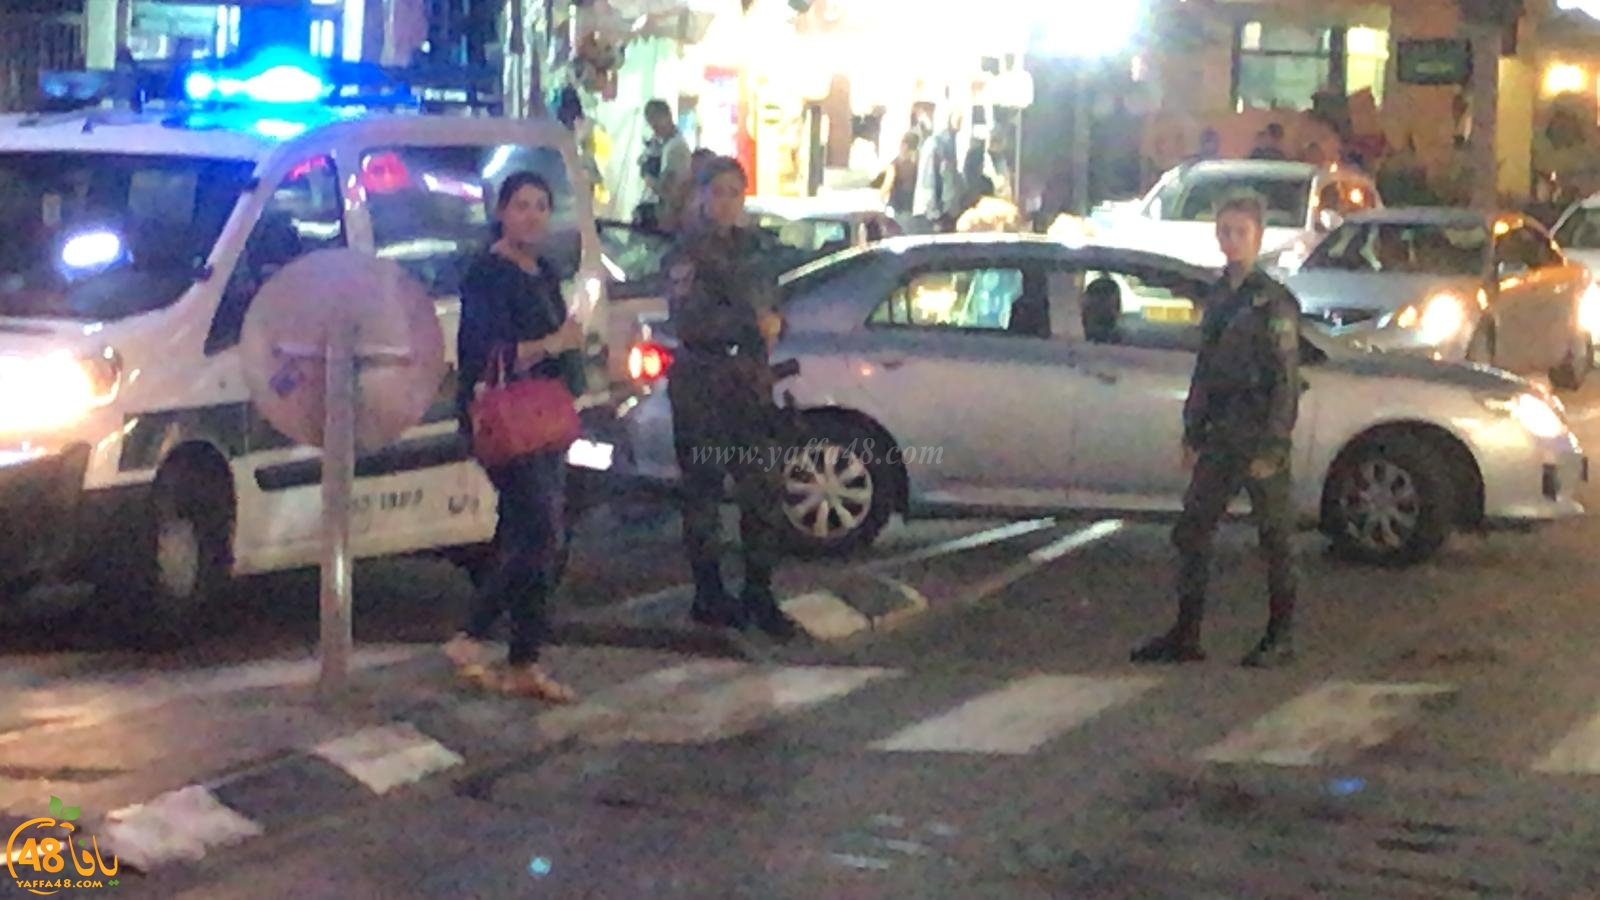  فيديو: إغلاق شارع ييفت بعد إلقاء زجاجة حارقة تجاه دورية للشرطة 